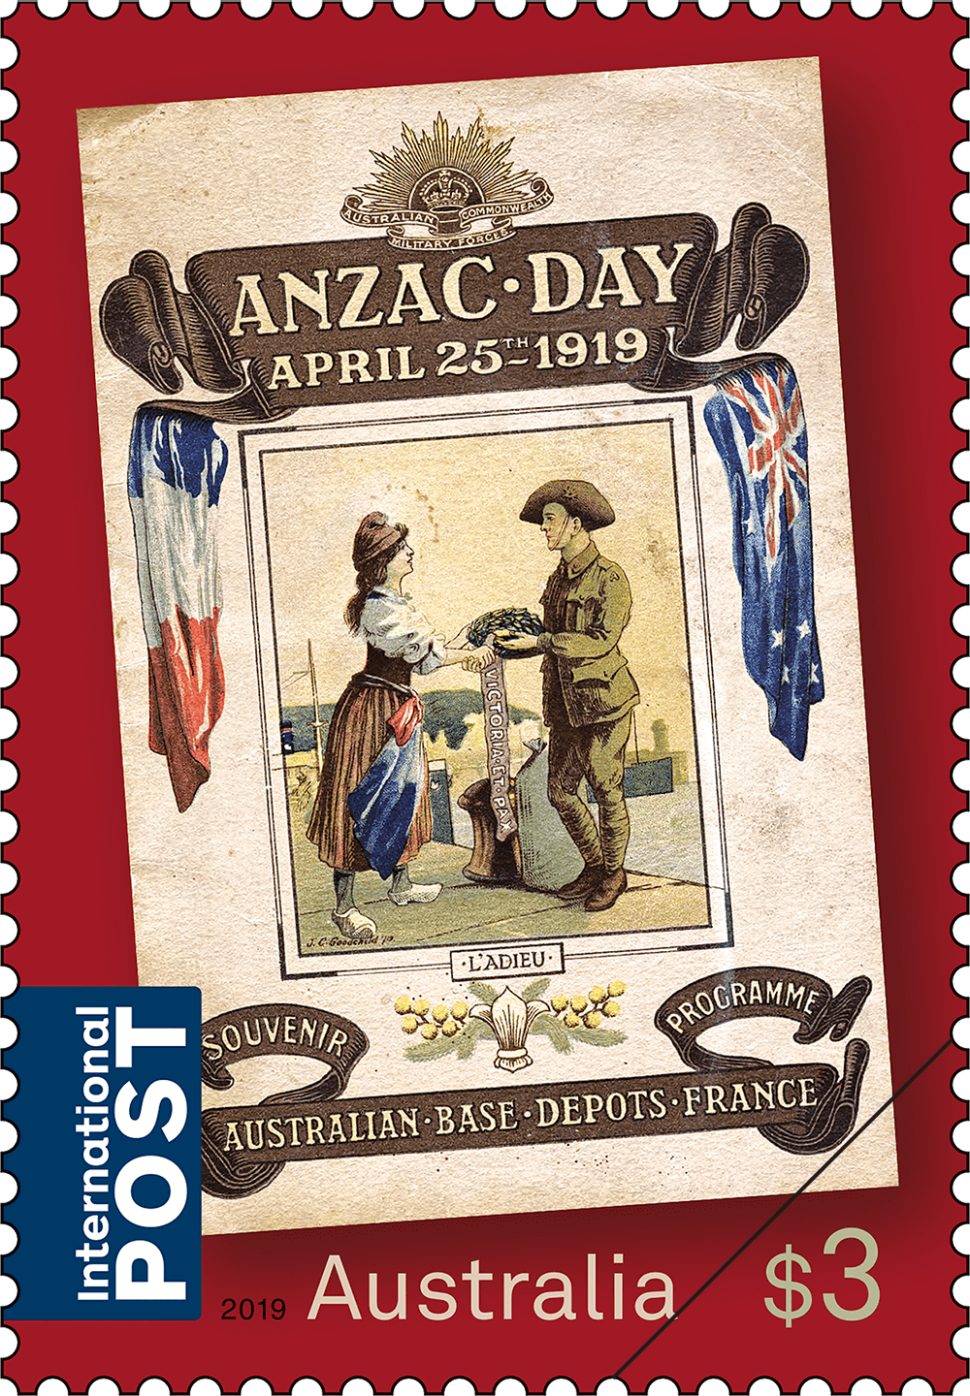 $3 - Anzac Day 1919, Australian Depots, France